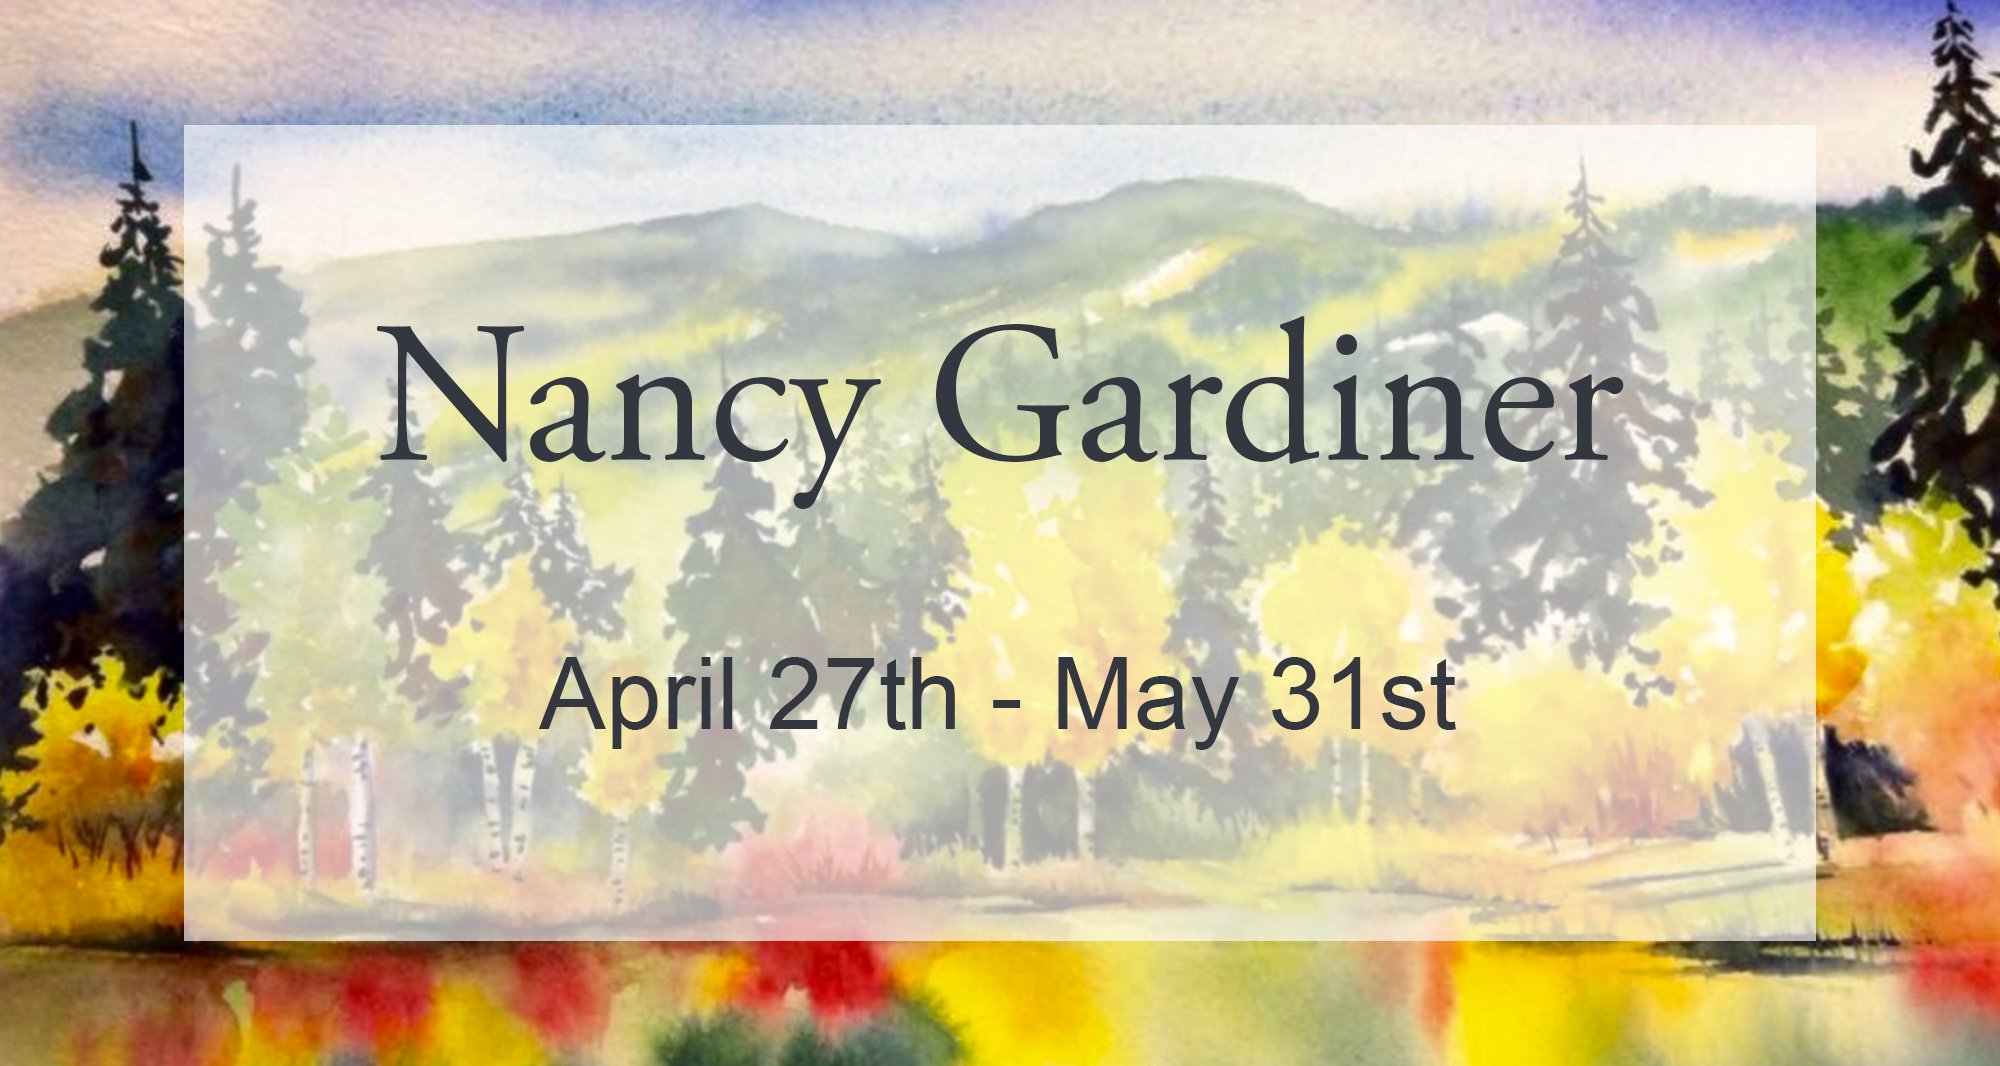 Nancy Gardiner Banner Image.jpg